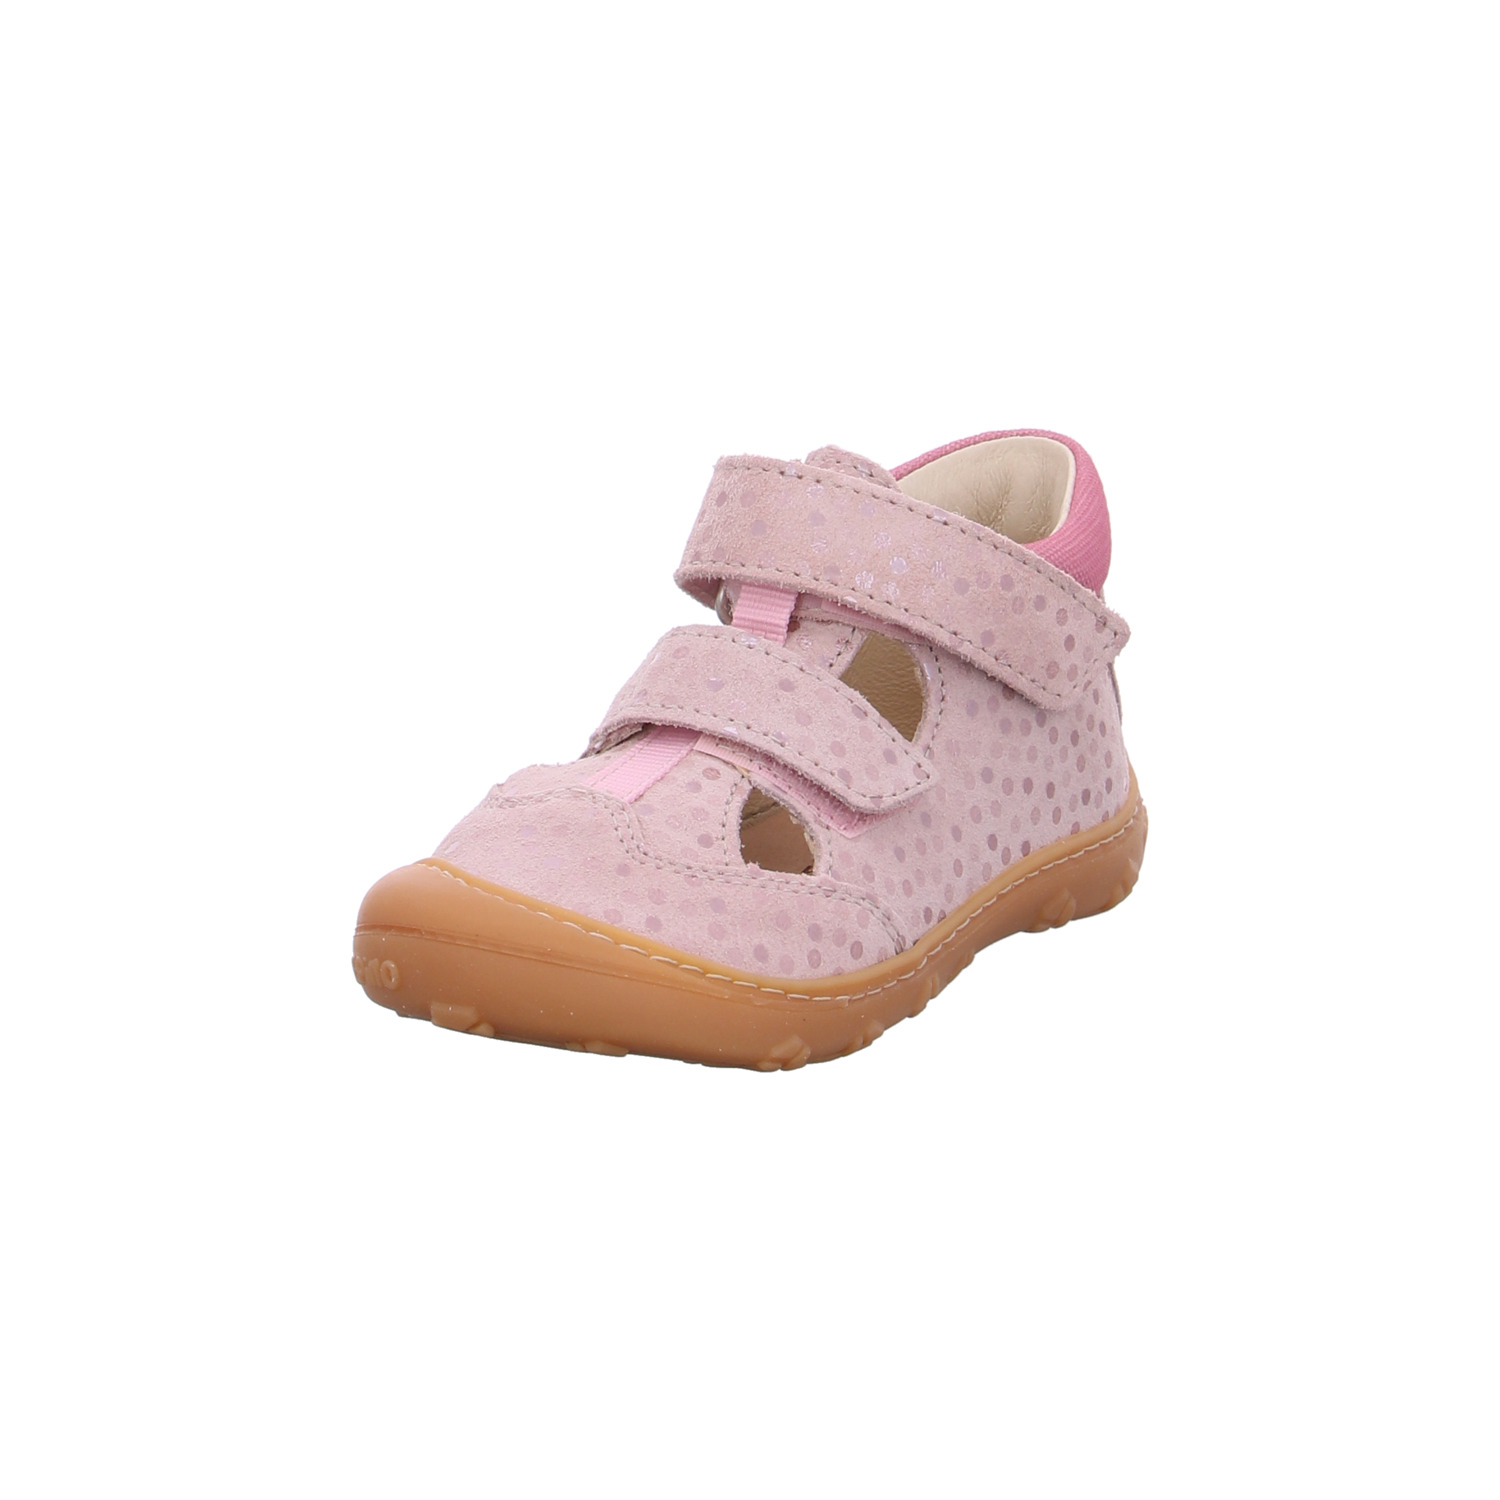 ricosta-kinder-sandaletten-mädchen-rosa-126070-19